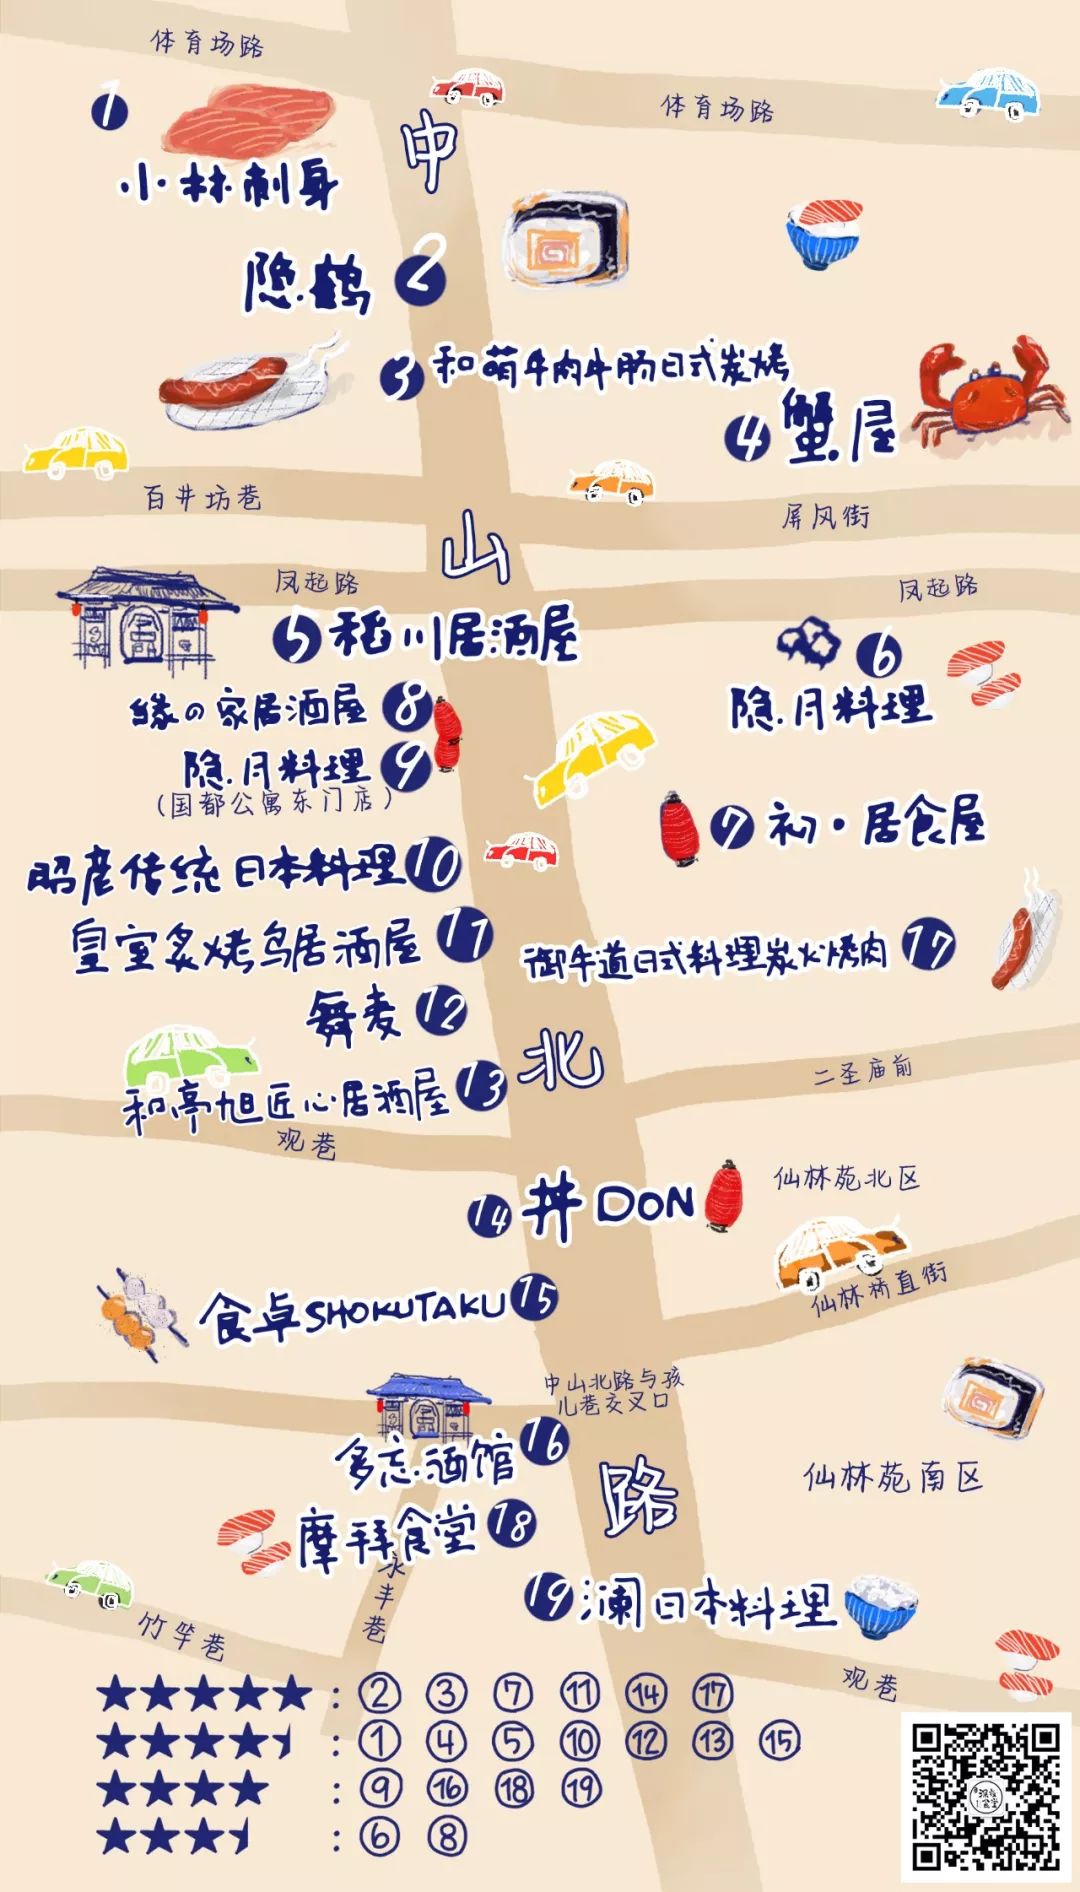 中山北路最全日料手绘地图!20家门店等你横扫!图片